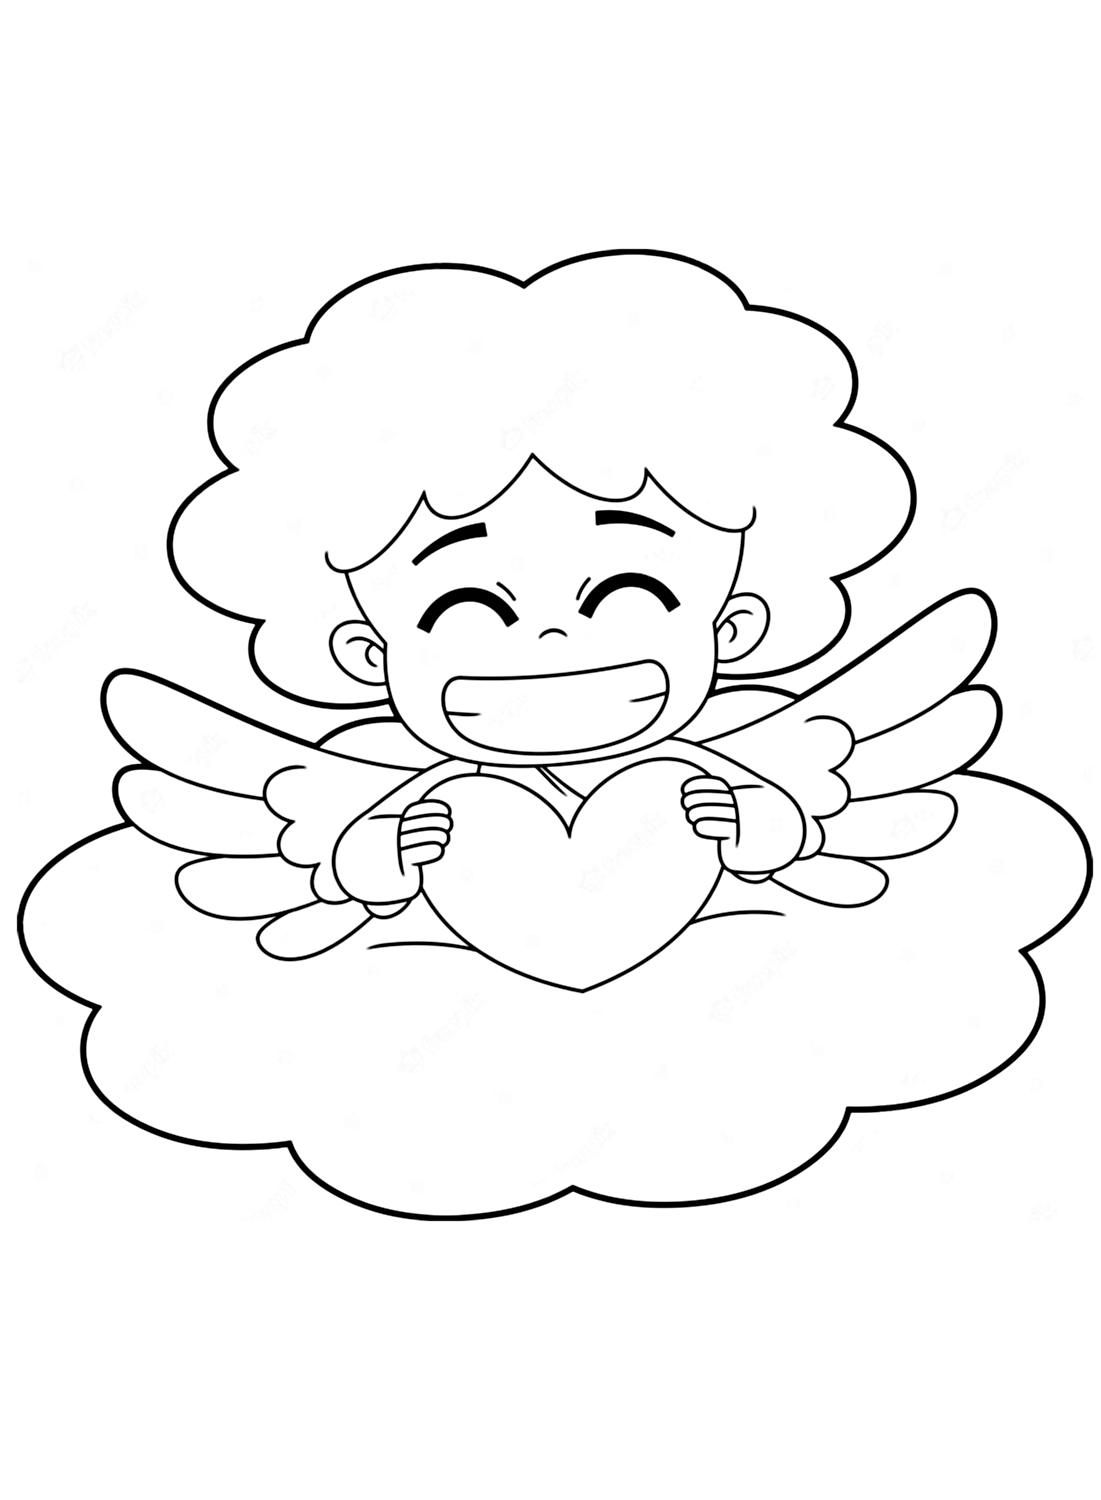 Eine Malvorlage für einen lächelnden Engel von Angel